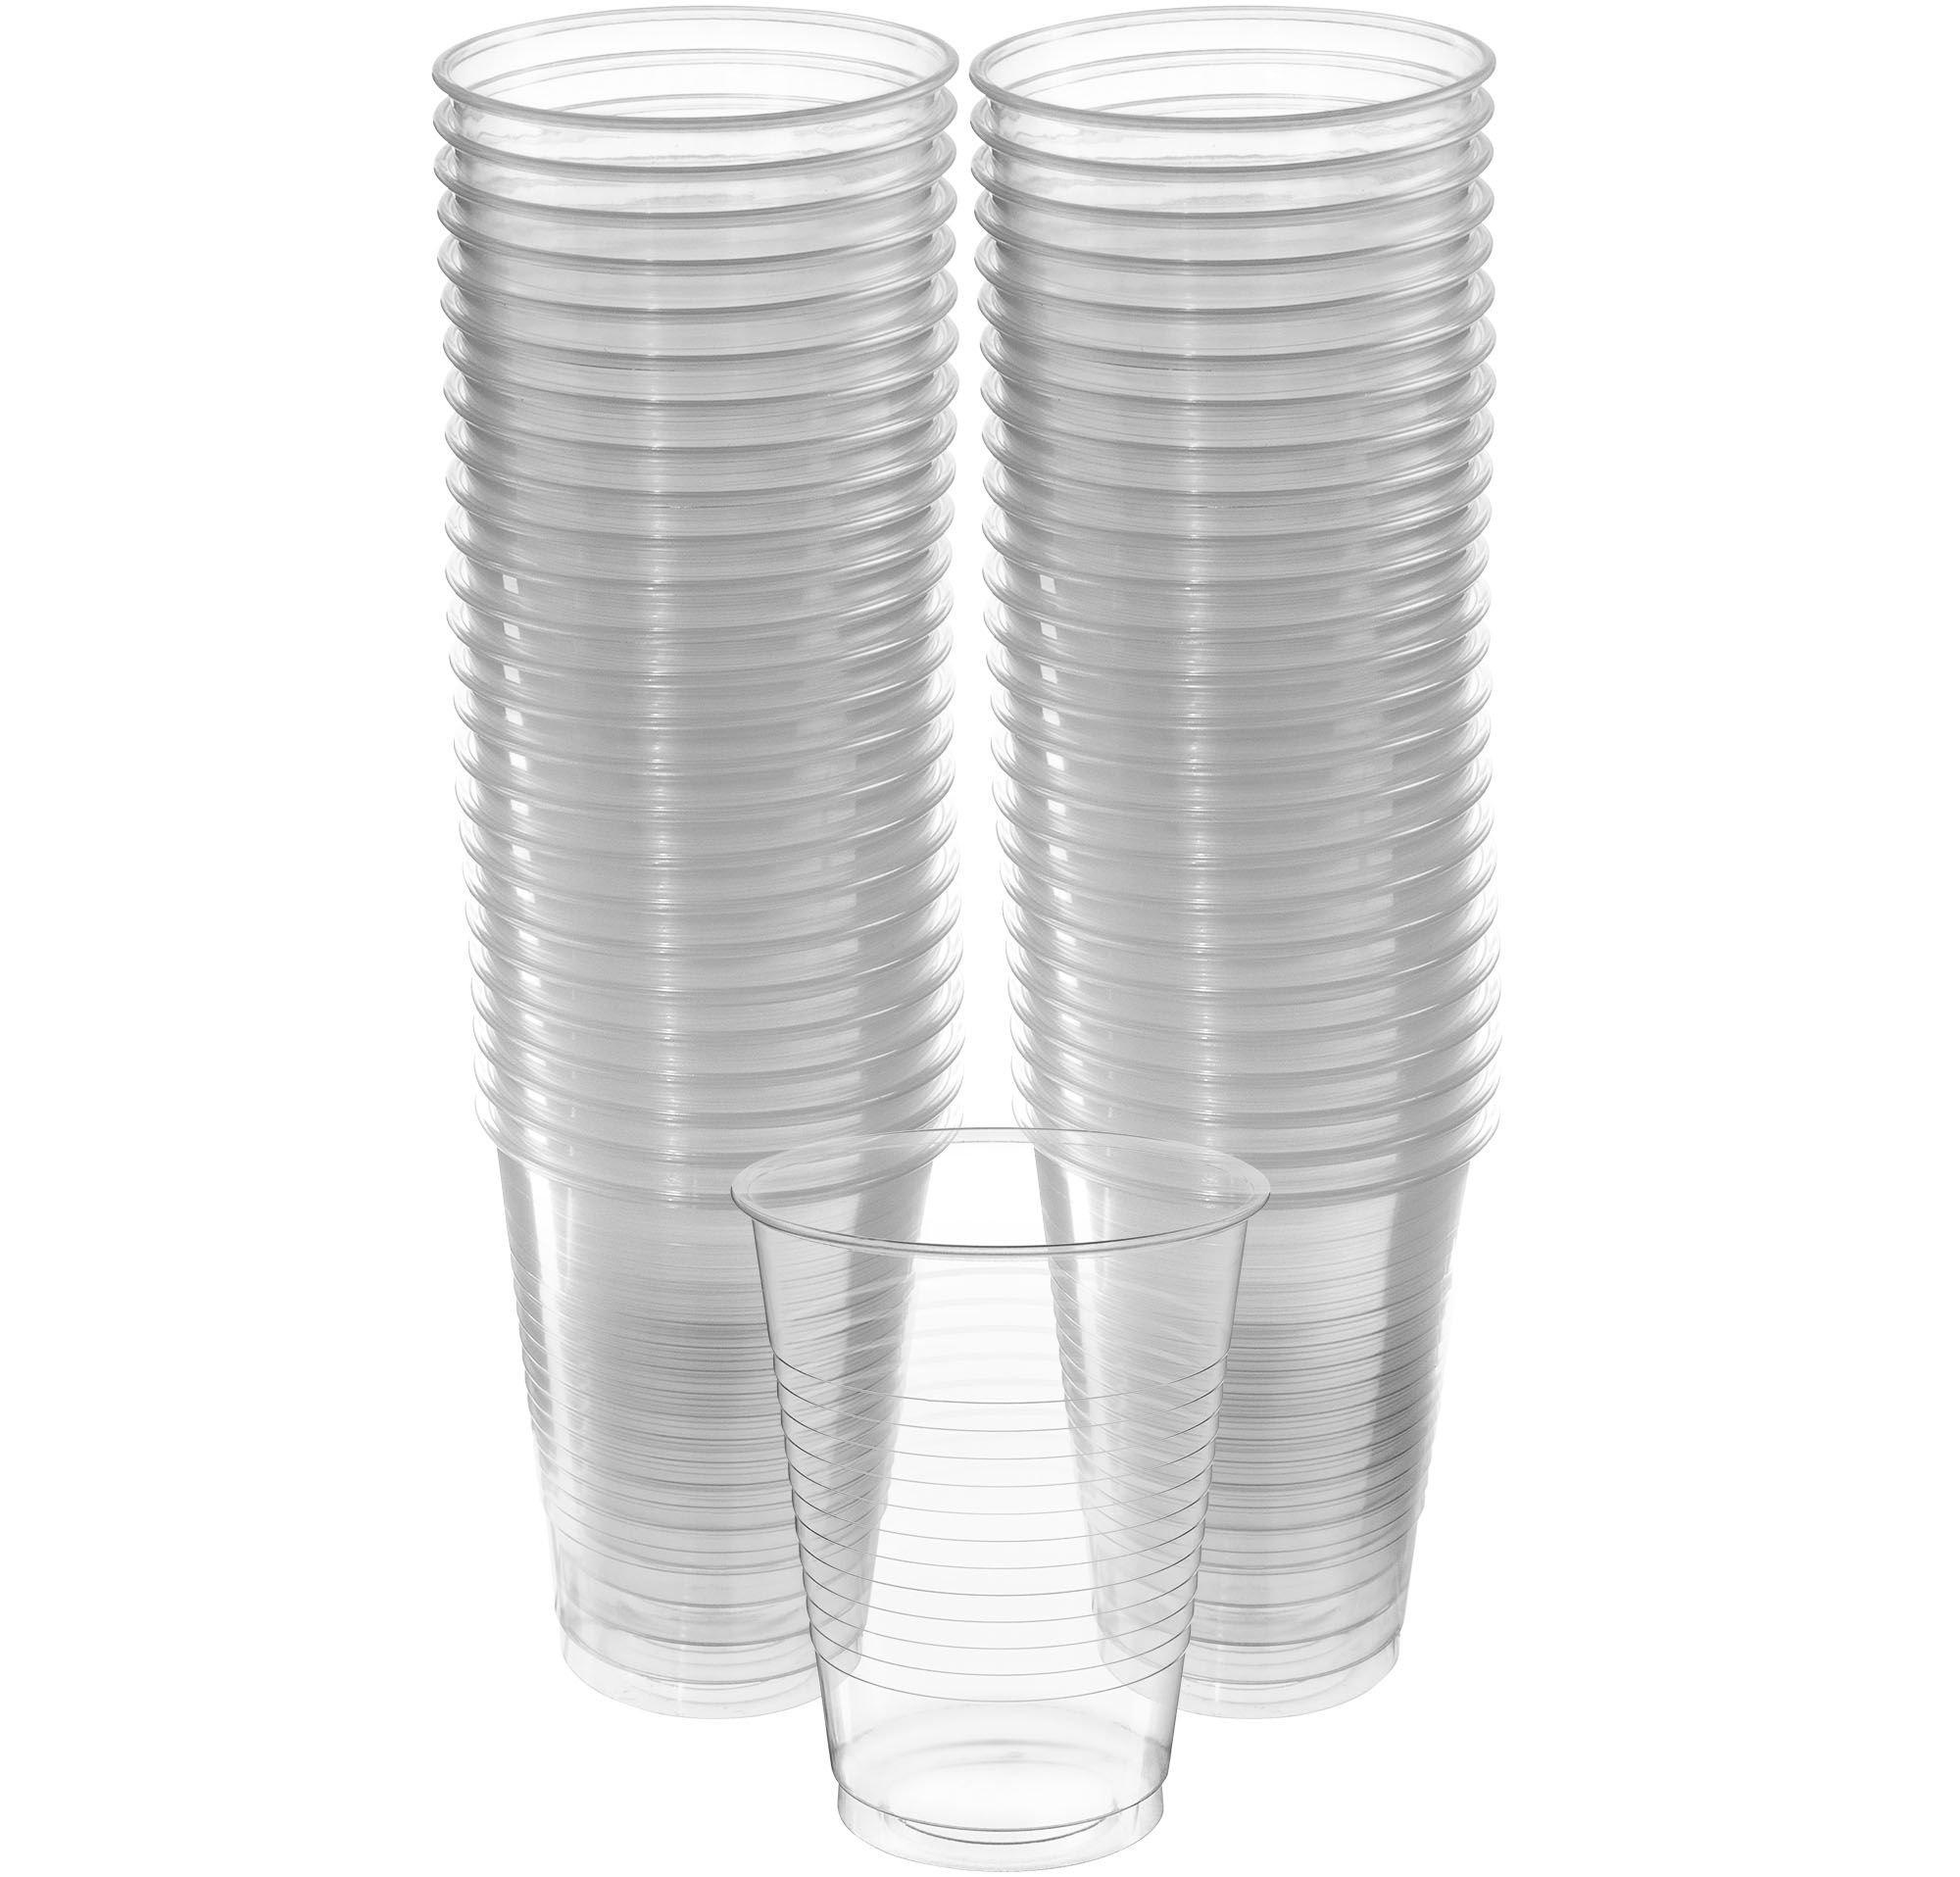 Plastic Cups, 18oz, 50ct